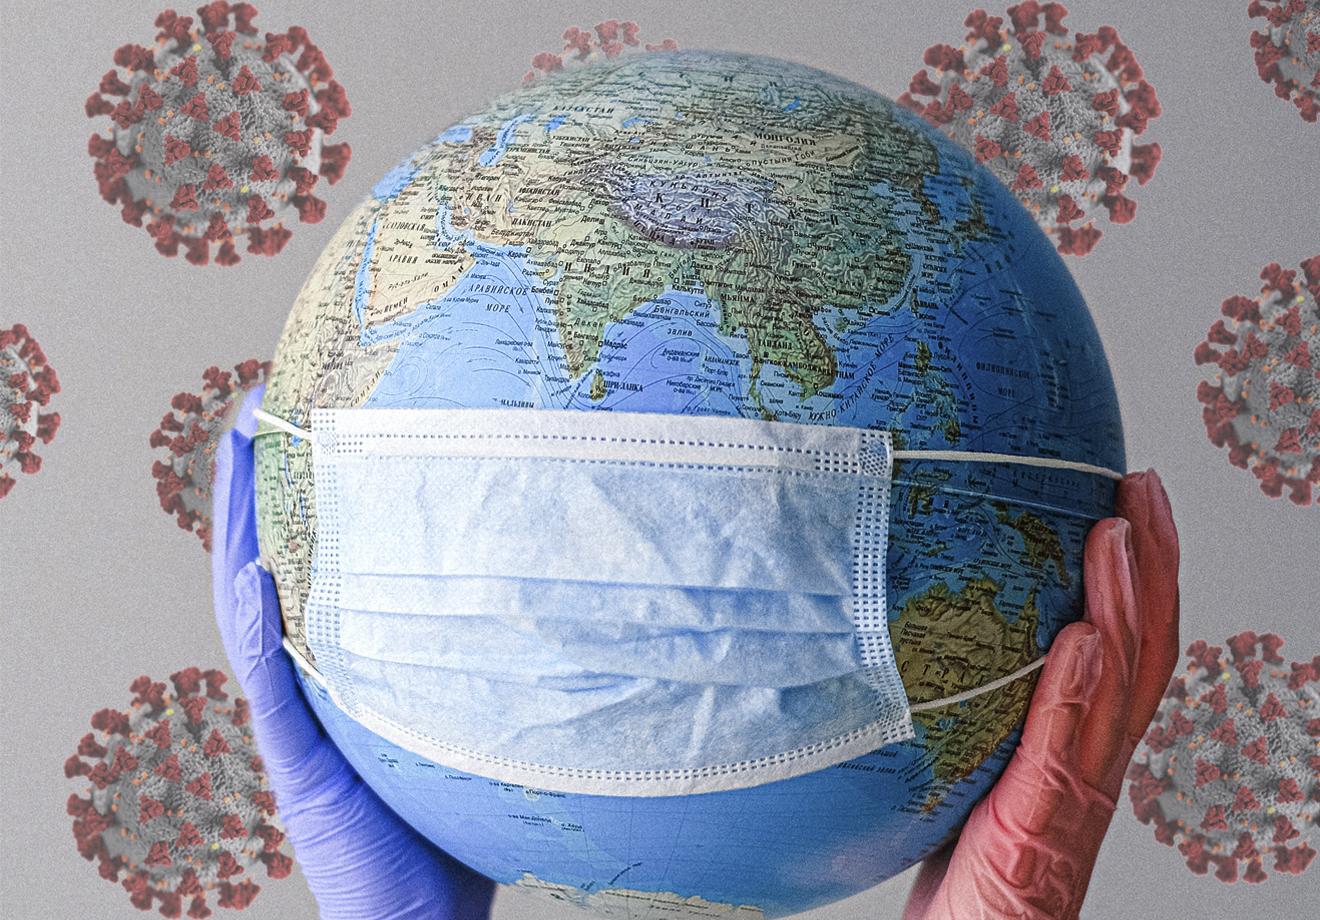 Pandemia: de fratura metabólica e crise sistêmica